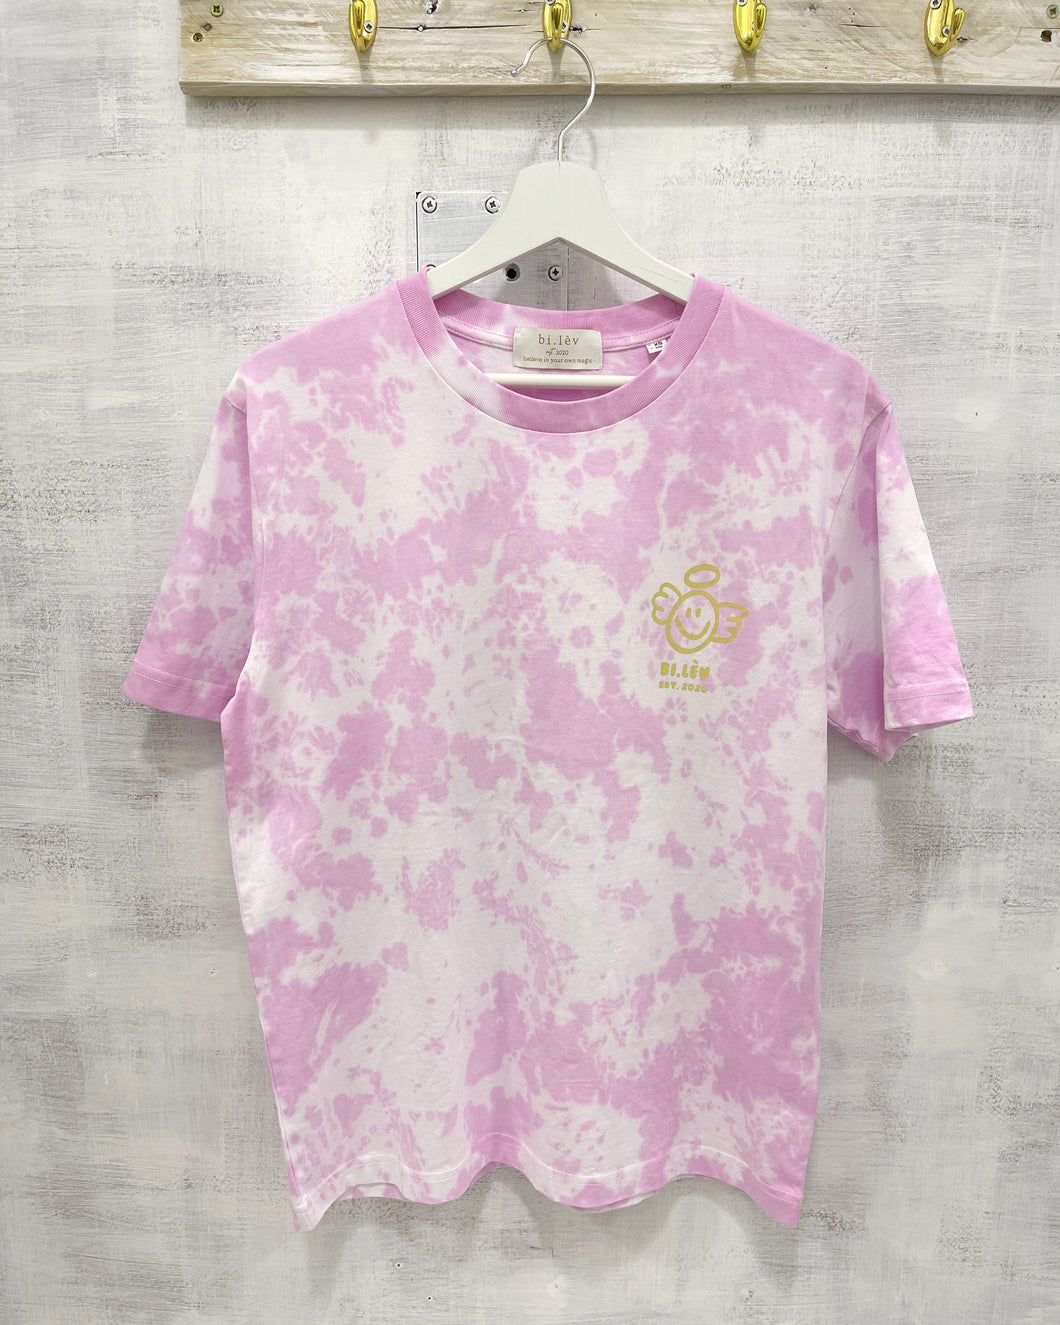 ANGEL PINK ROSE - Tie Dye Organic Cotton T-shirt